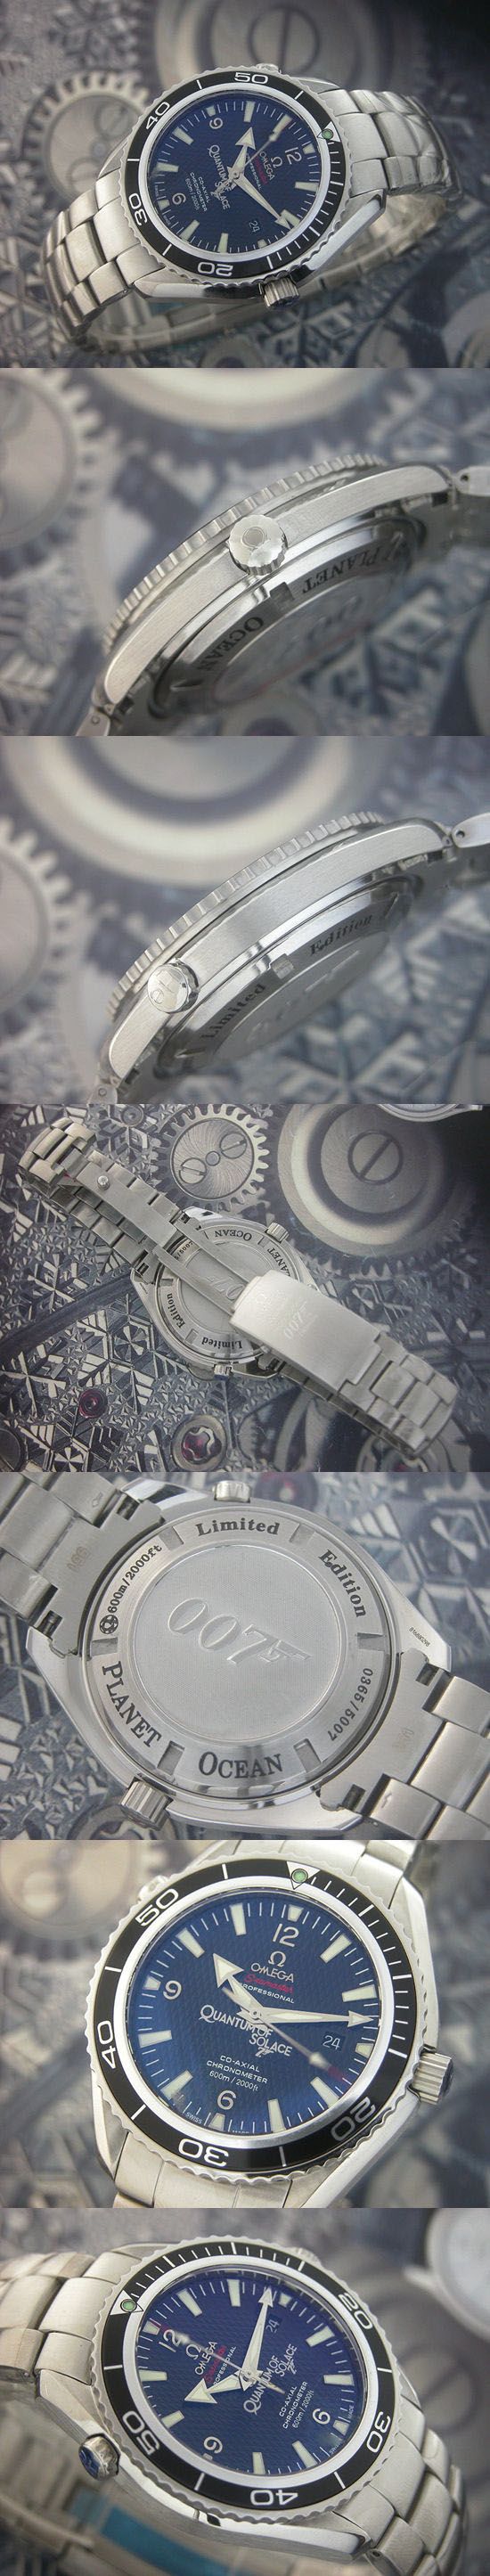 おしゃれなブランド時計がオメガ-シーマスター-OMEGA-2201.50.00-bb-男性用を提供します.